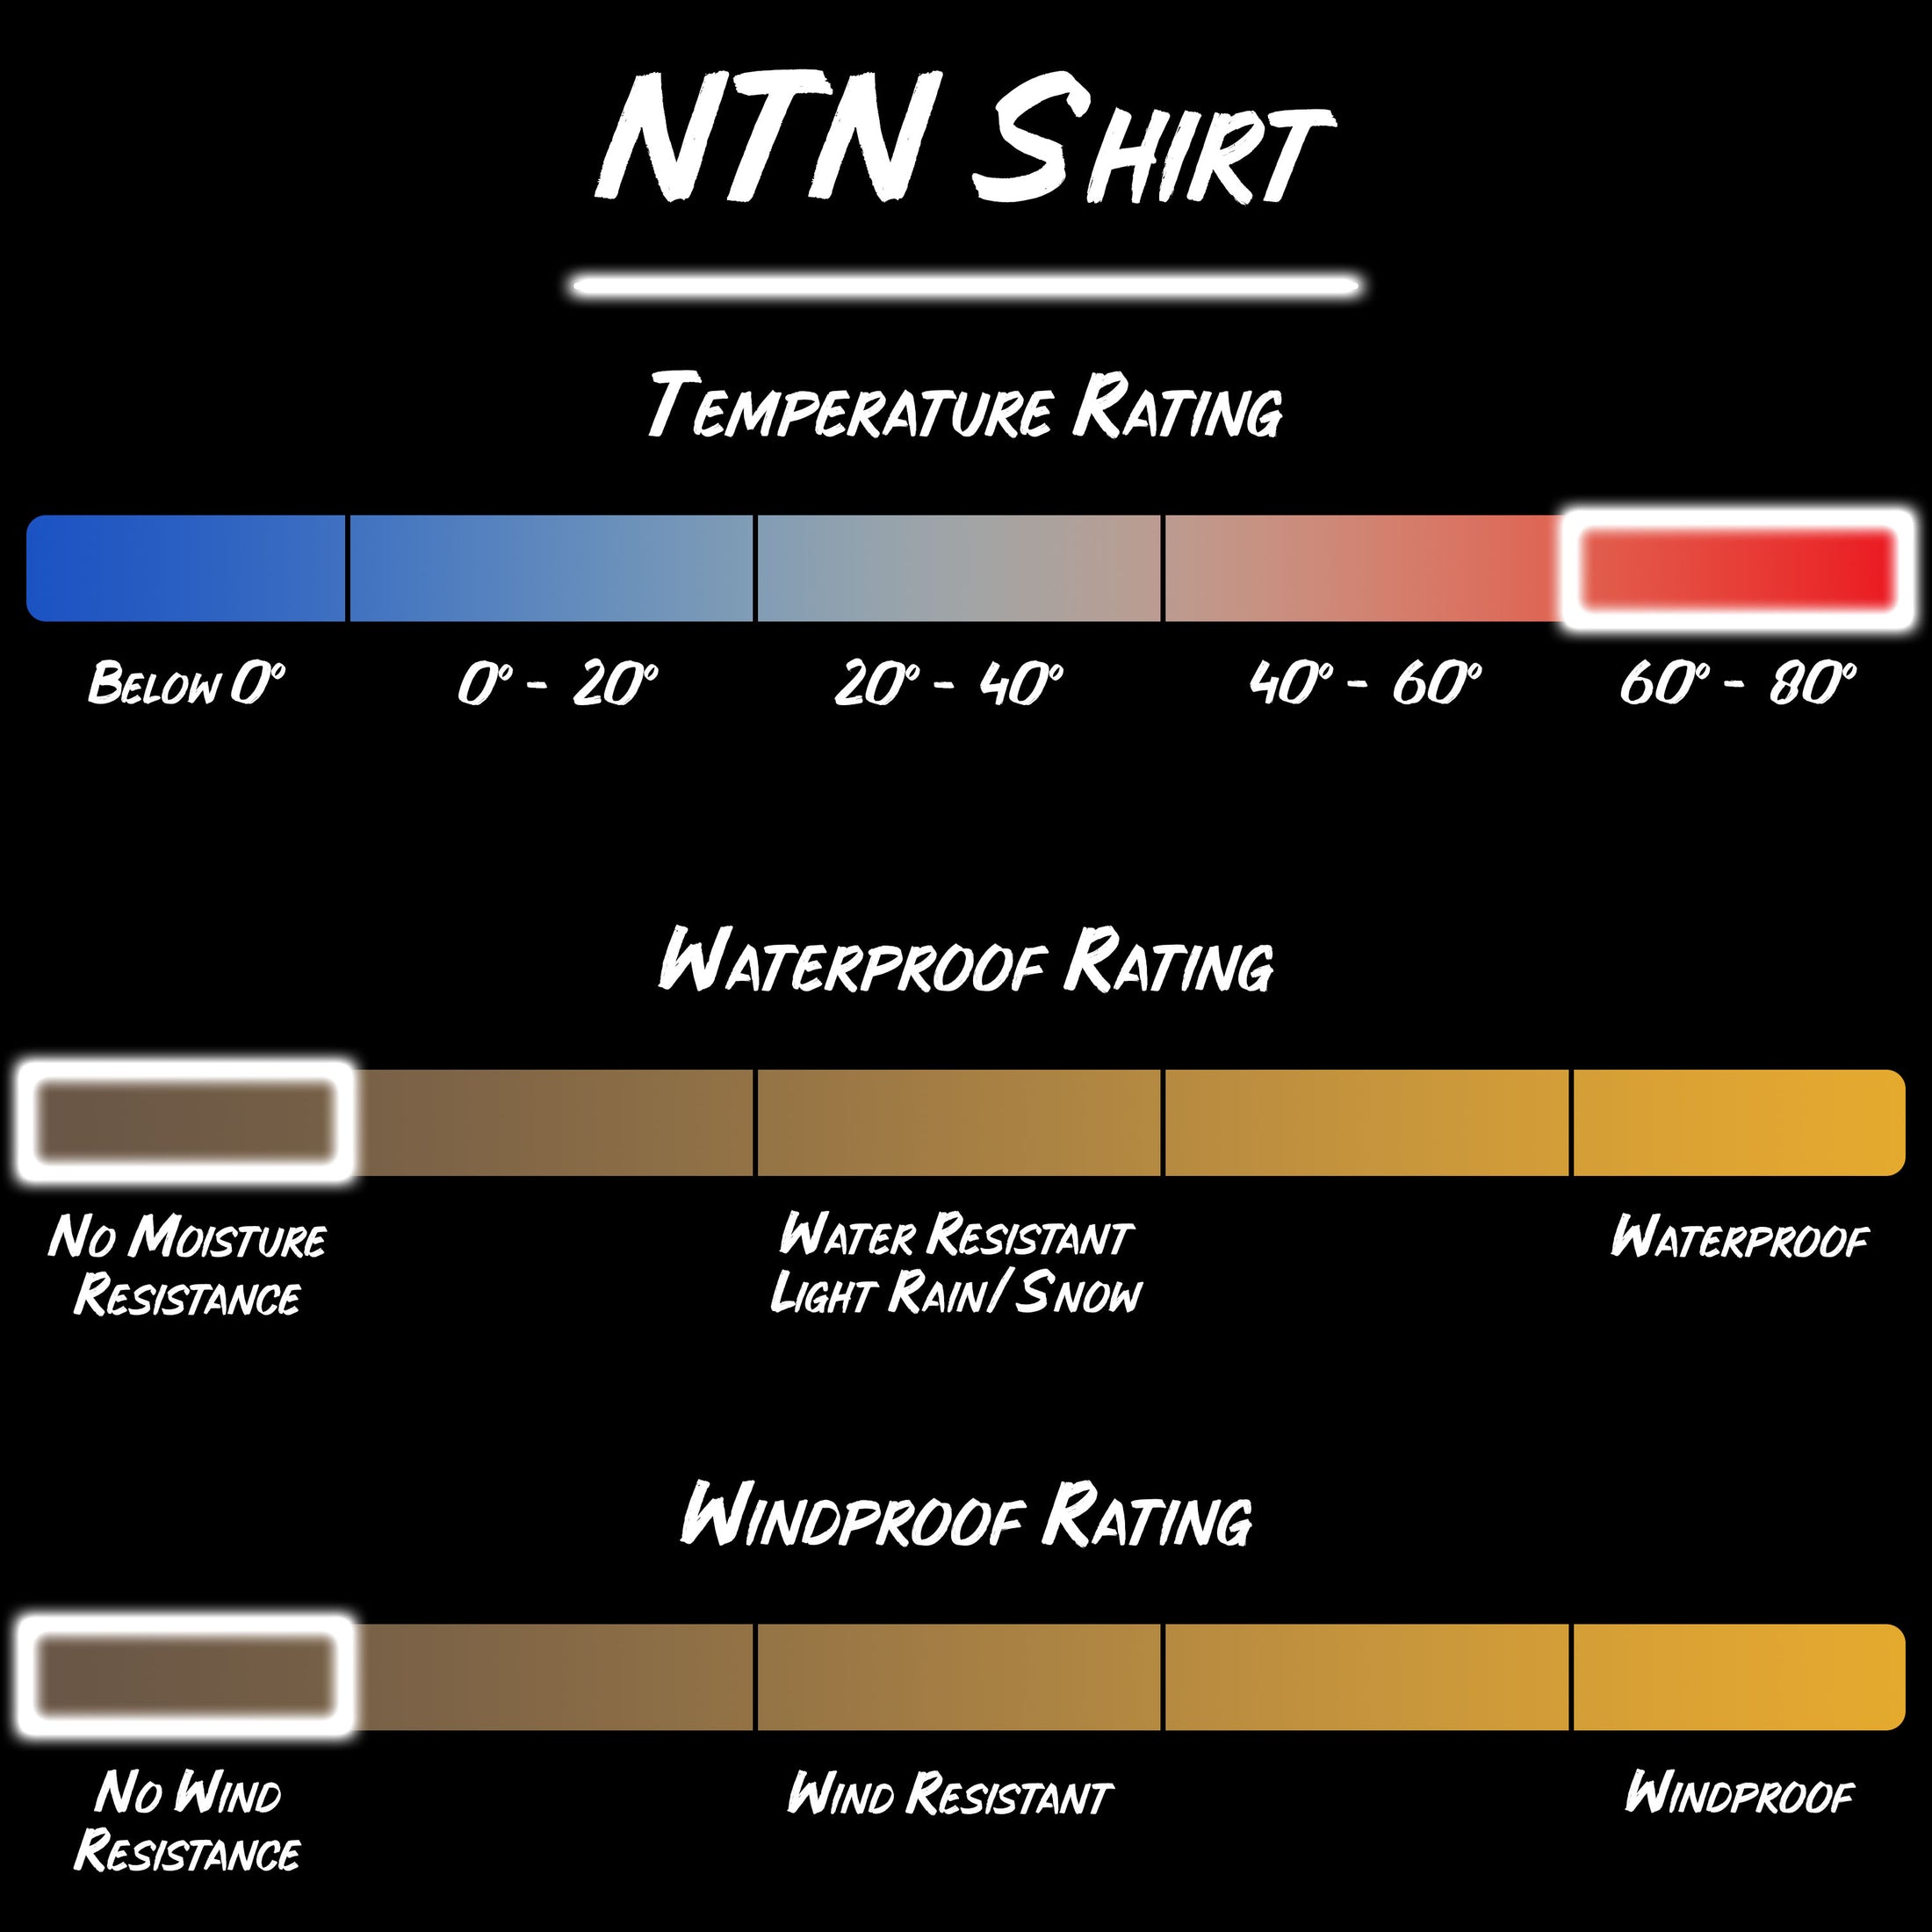 Gamekeeper field wear NTN short sleeve shirt product specifications